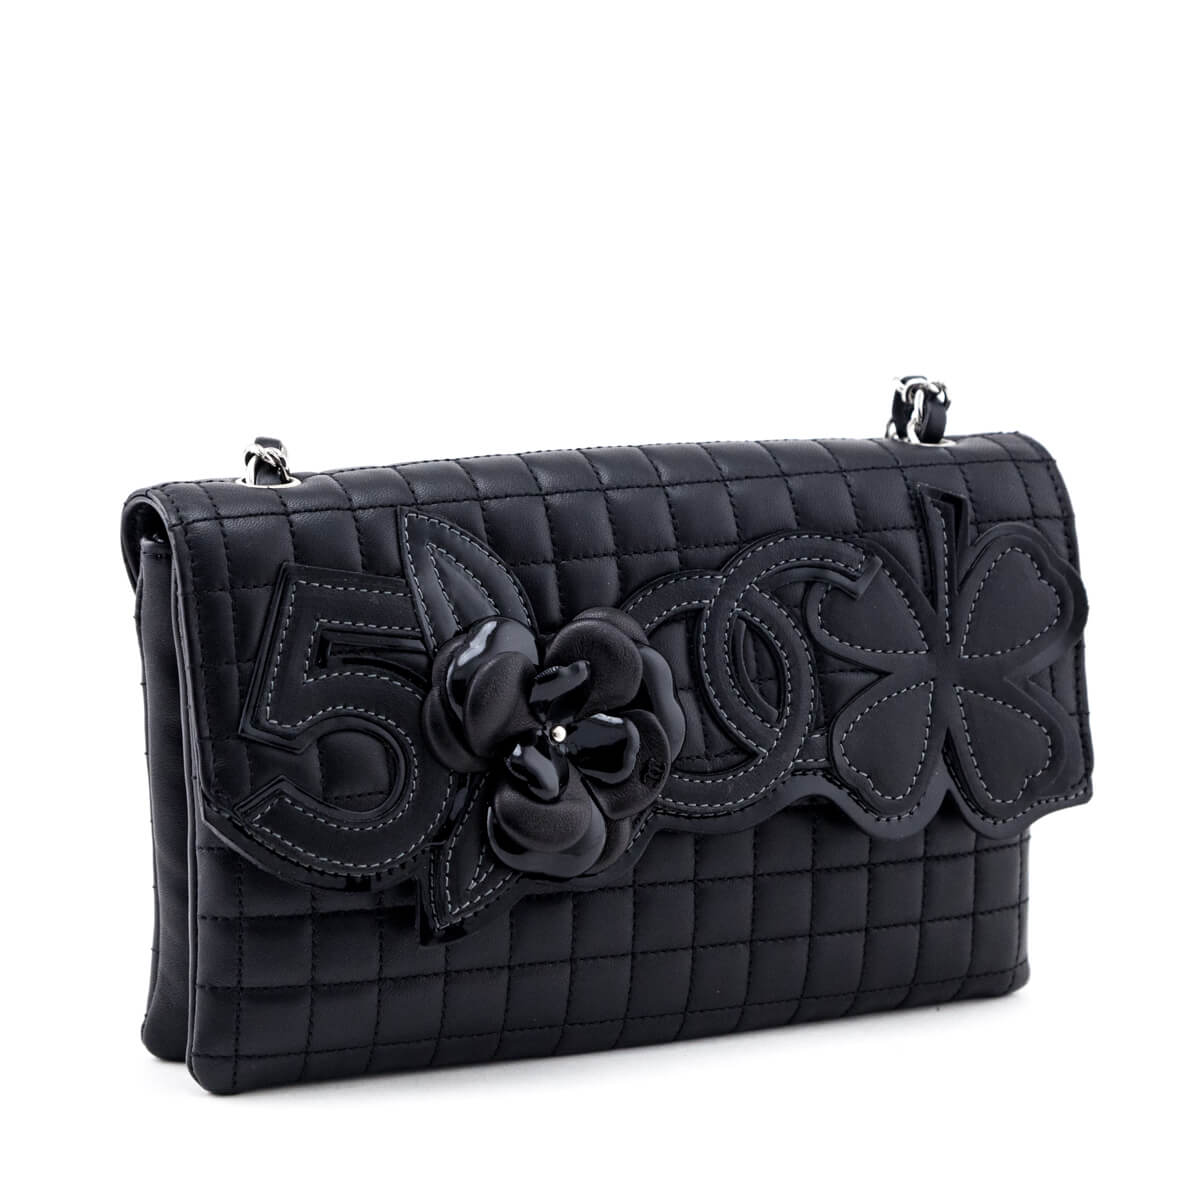 Chanel - Preowned Designer Handbags & Clothing - Love that Bag etc – Love  that Bag etc - Preowned Designer Fashions